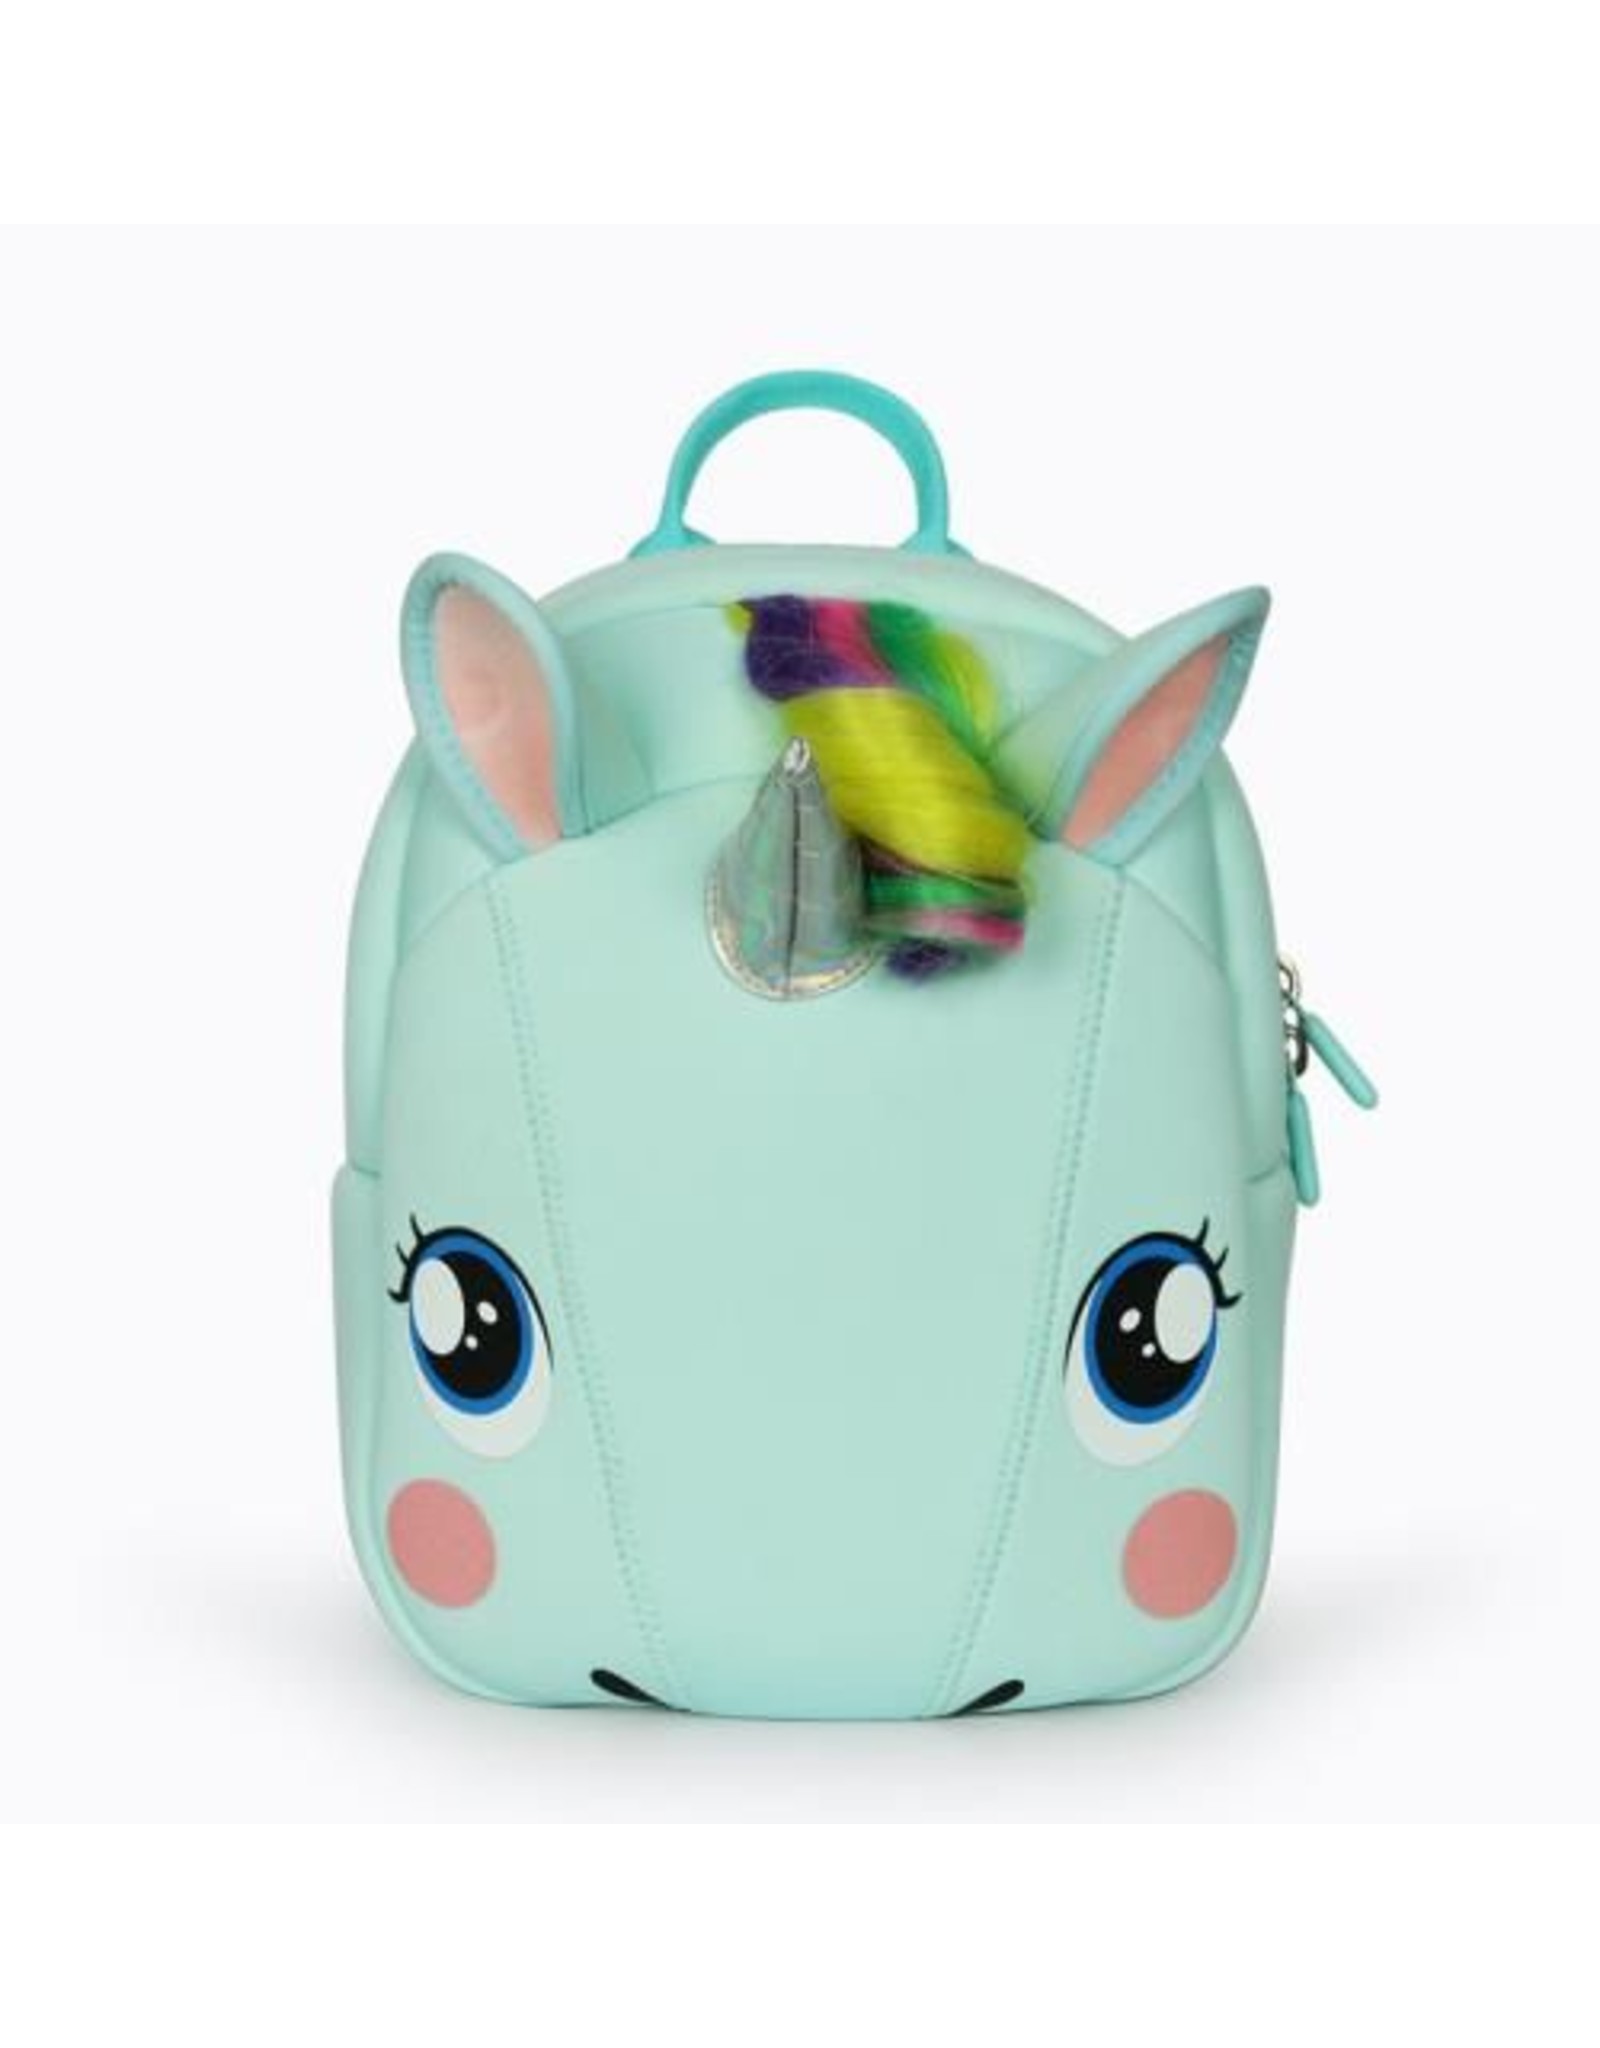 Childerns backpack Unicorn (Light green)